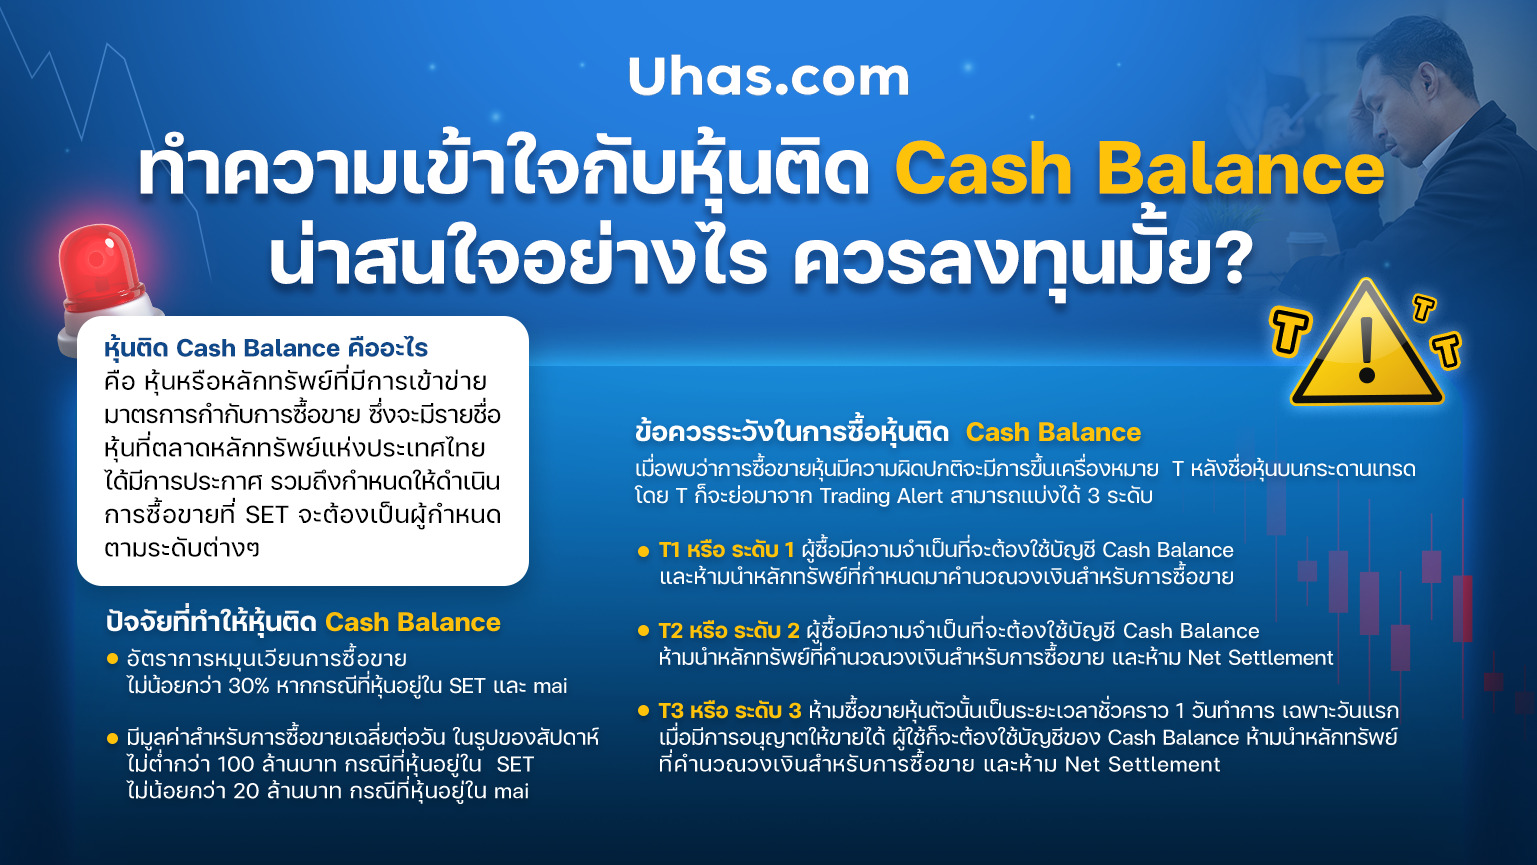 หุ้นติด Cash Balance คืออะไร - uhas